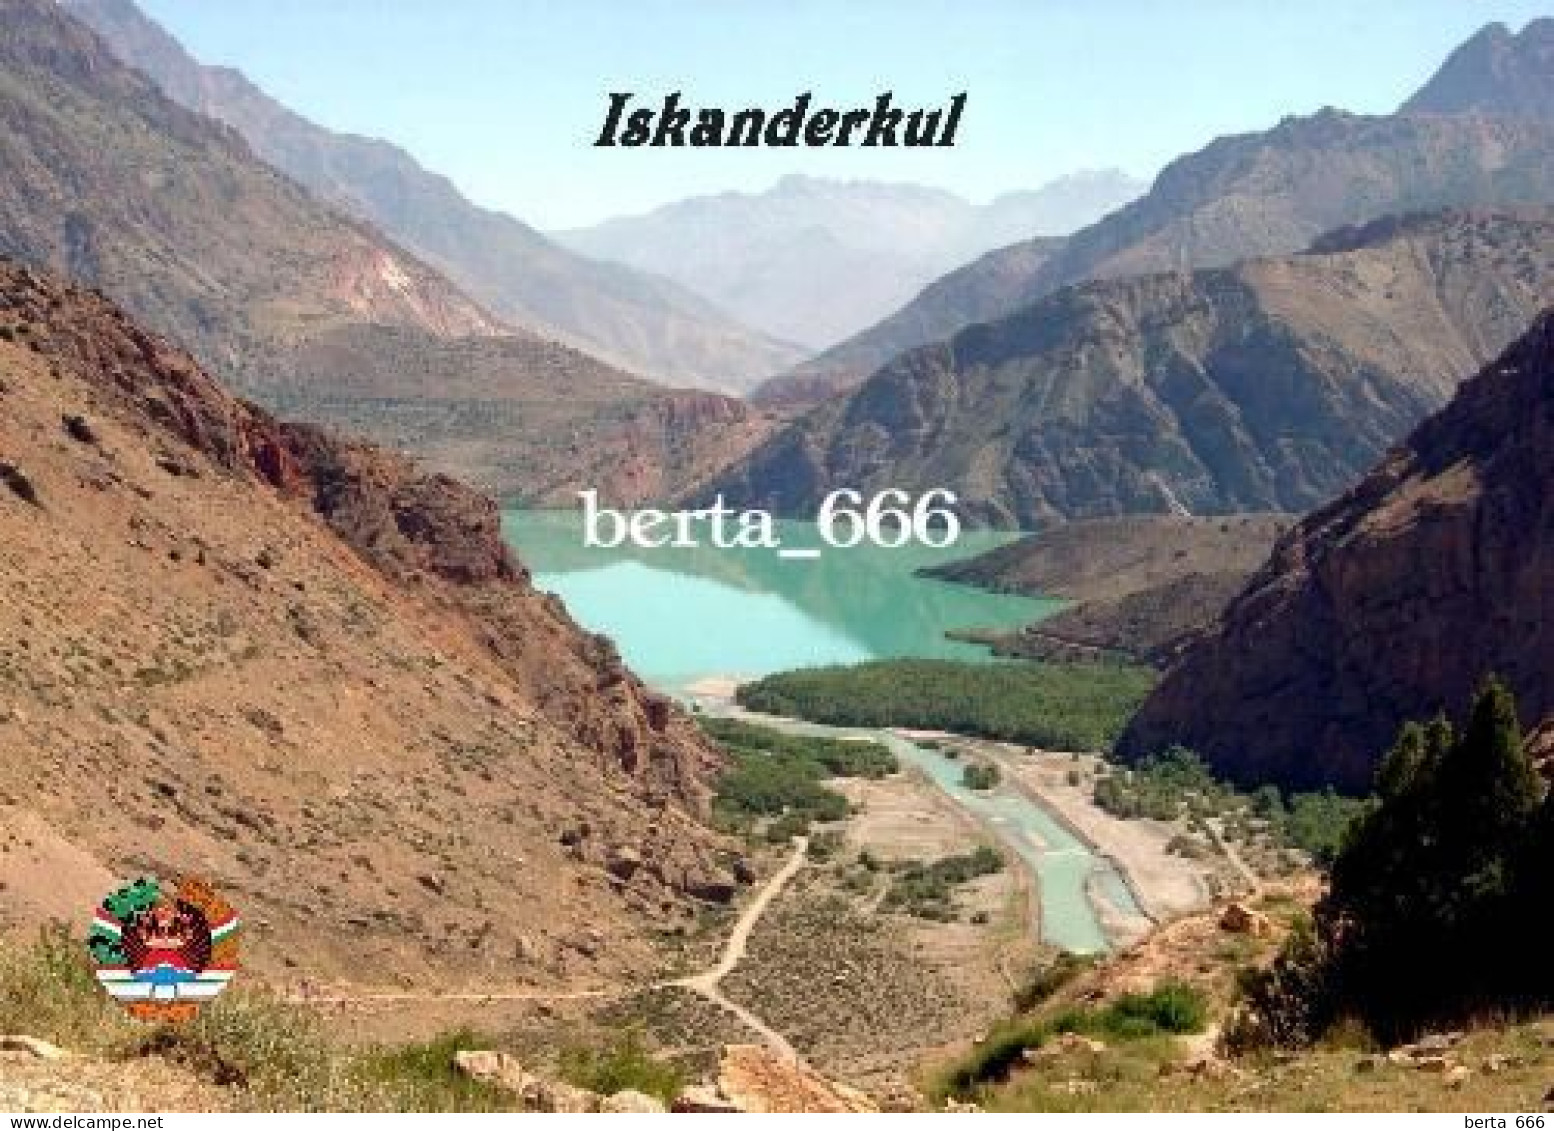 Tajikistan Iskanderkul Landscape New Postcard - Tagikistan